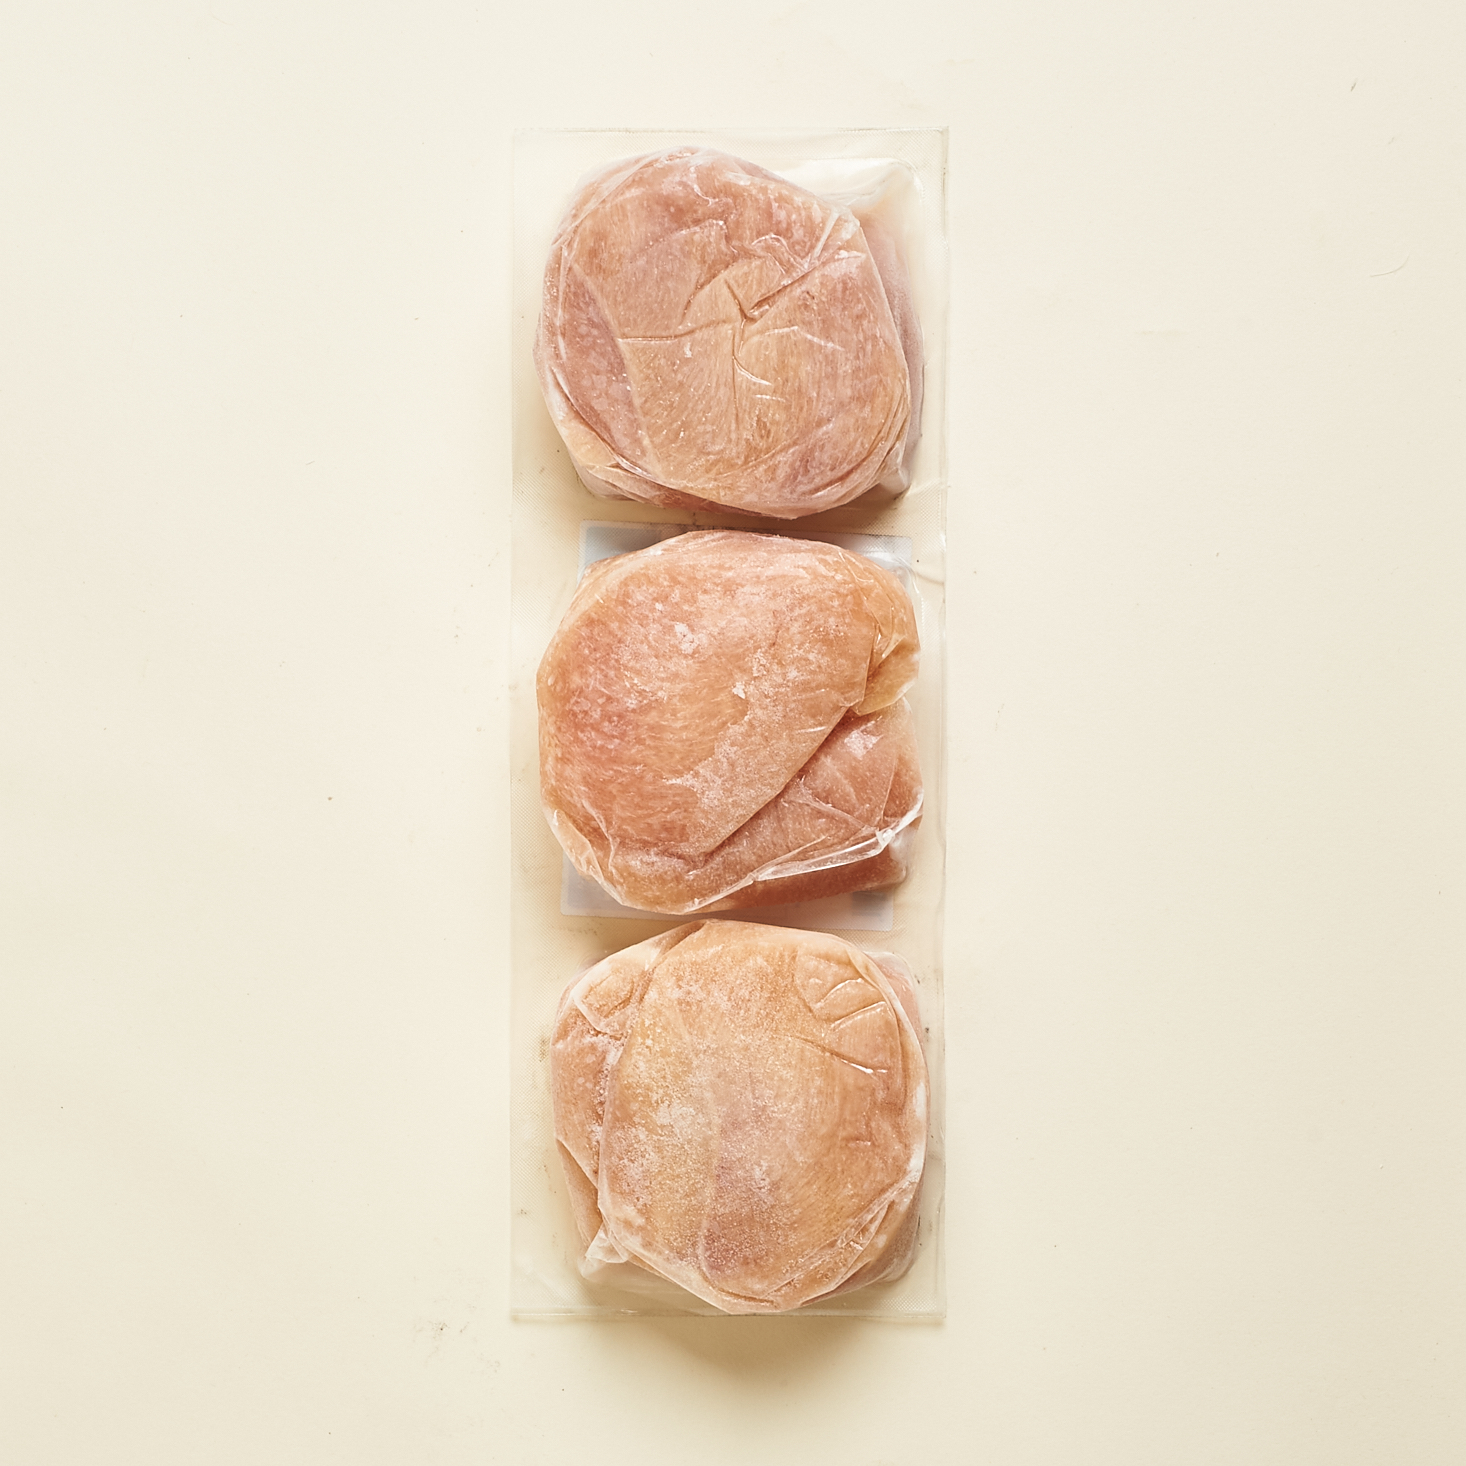 alternate view of three packs of frozen chicken